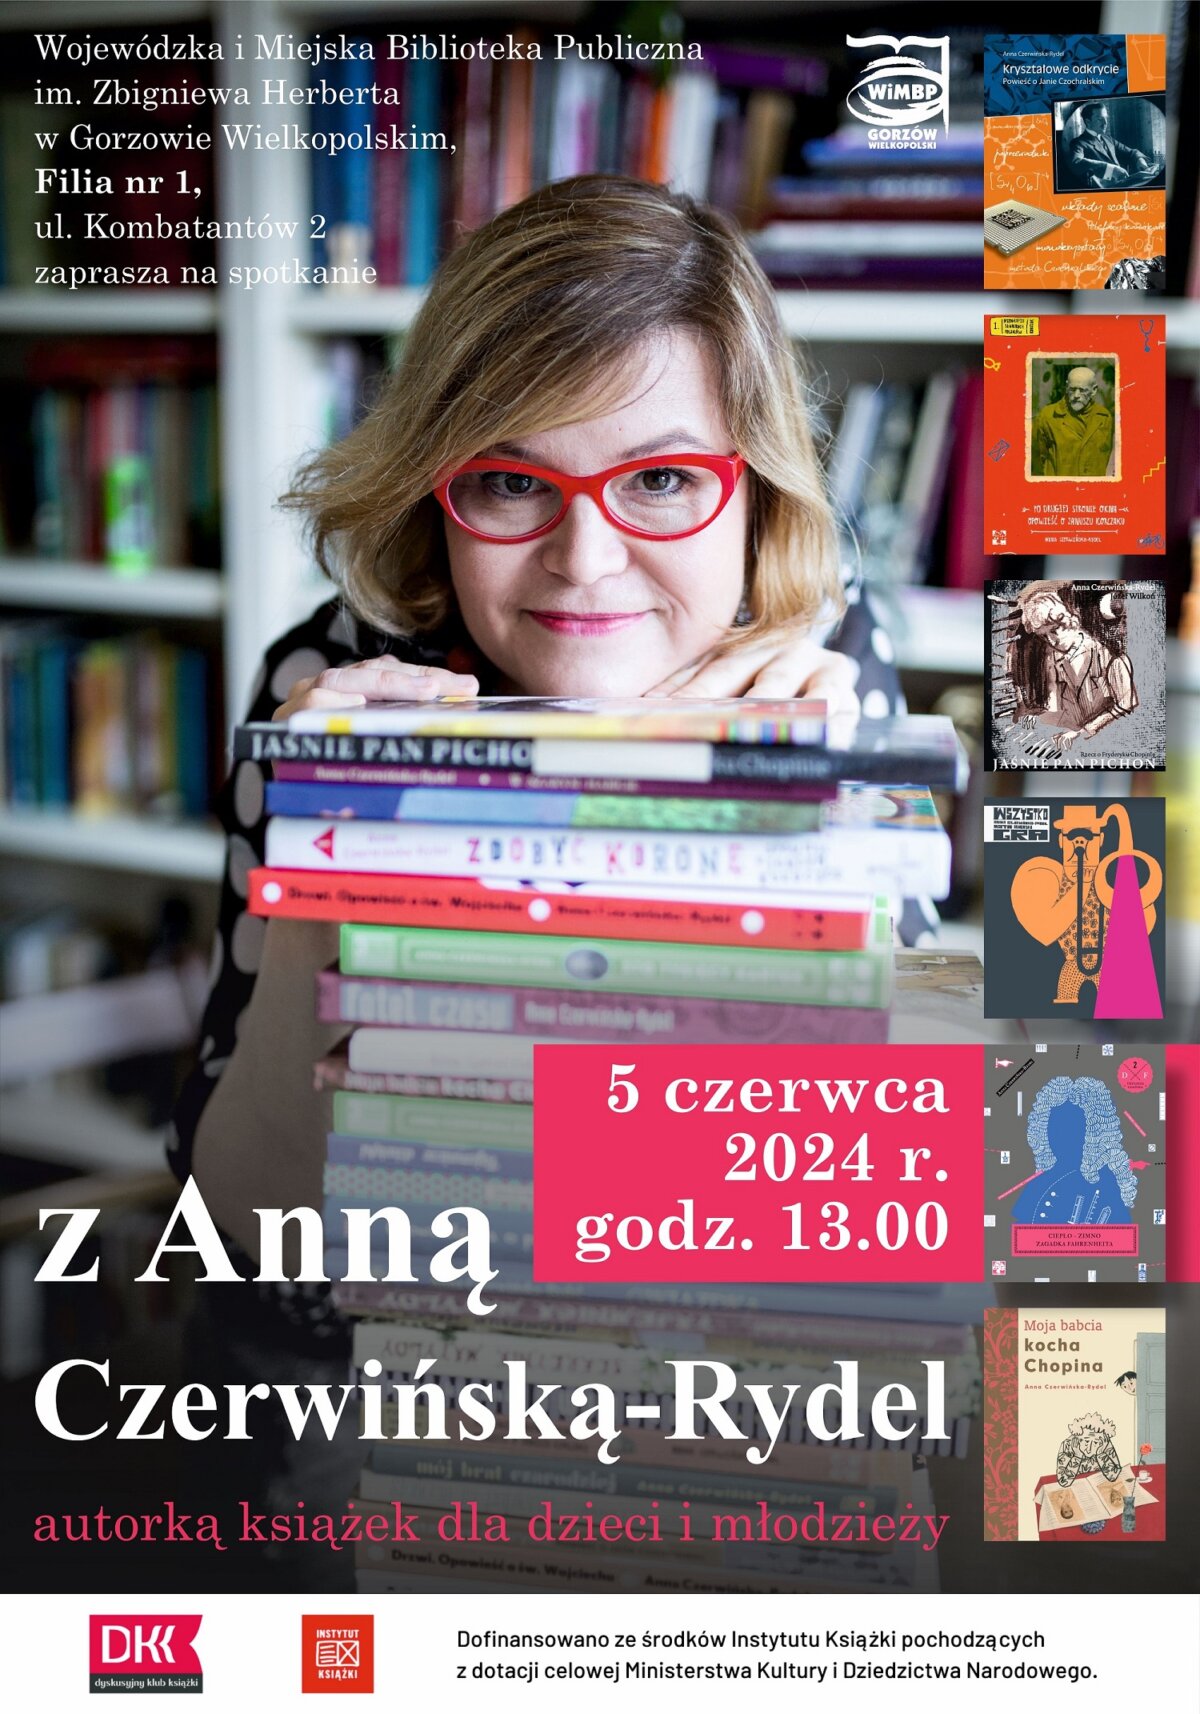 Plakat promujący wydarzenie ze zdjęciem autorki i okładkami książek.